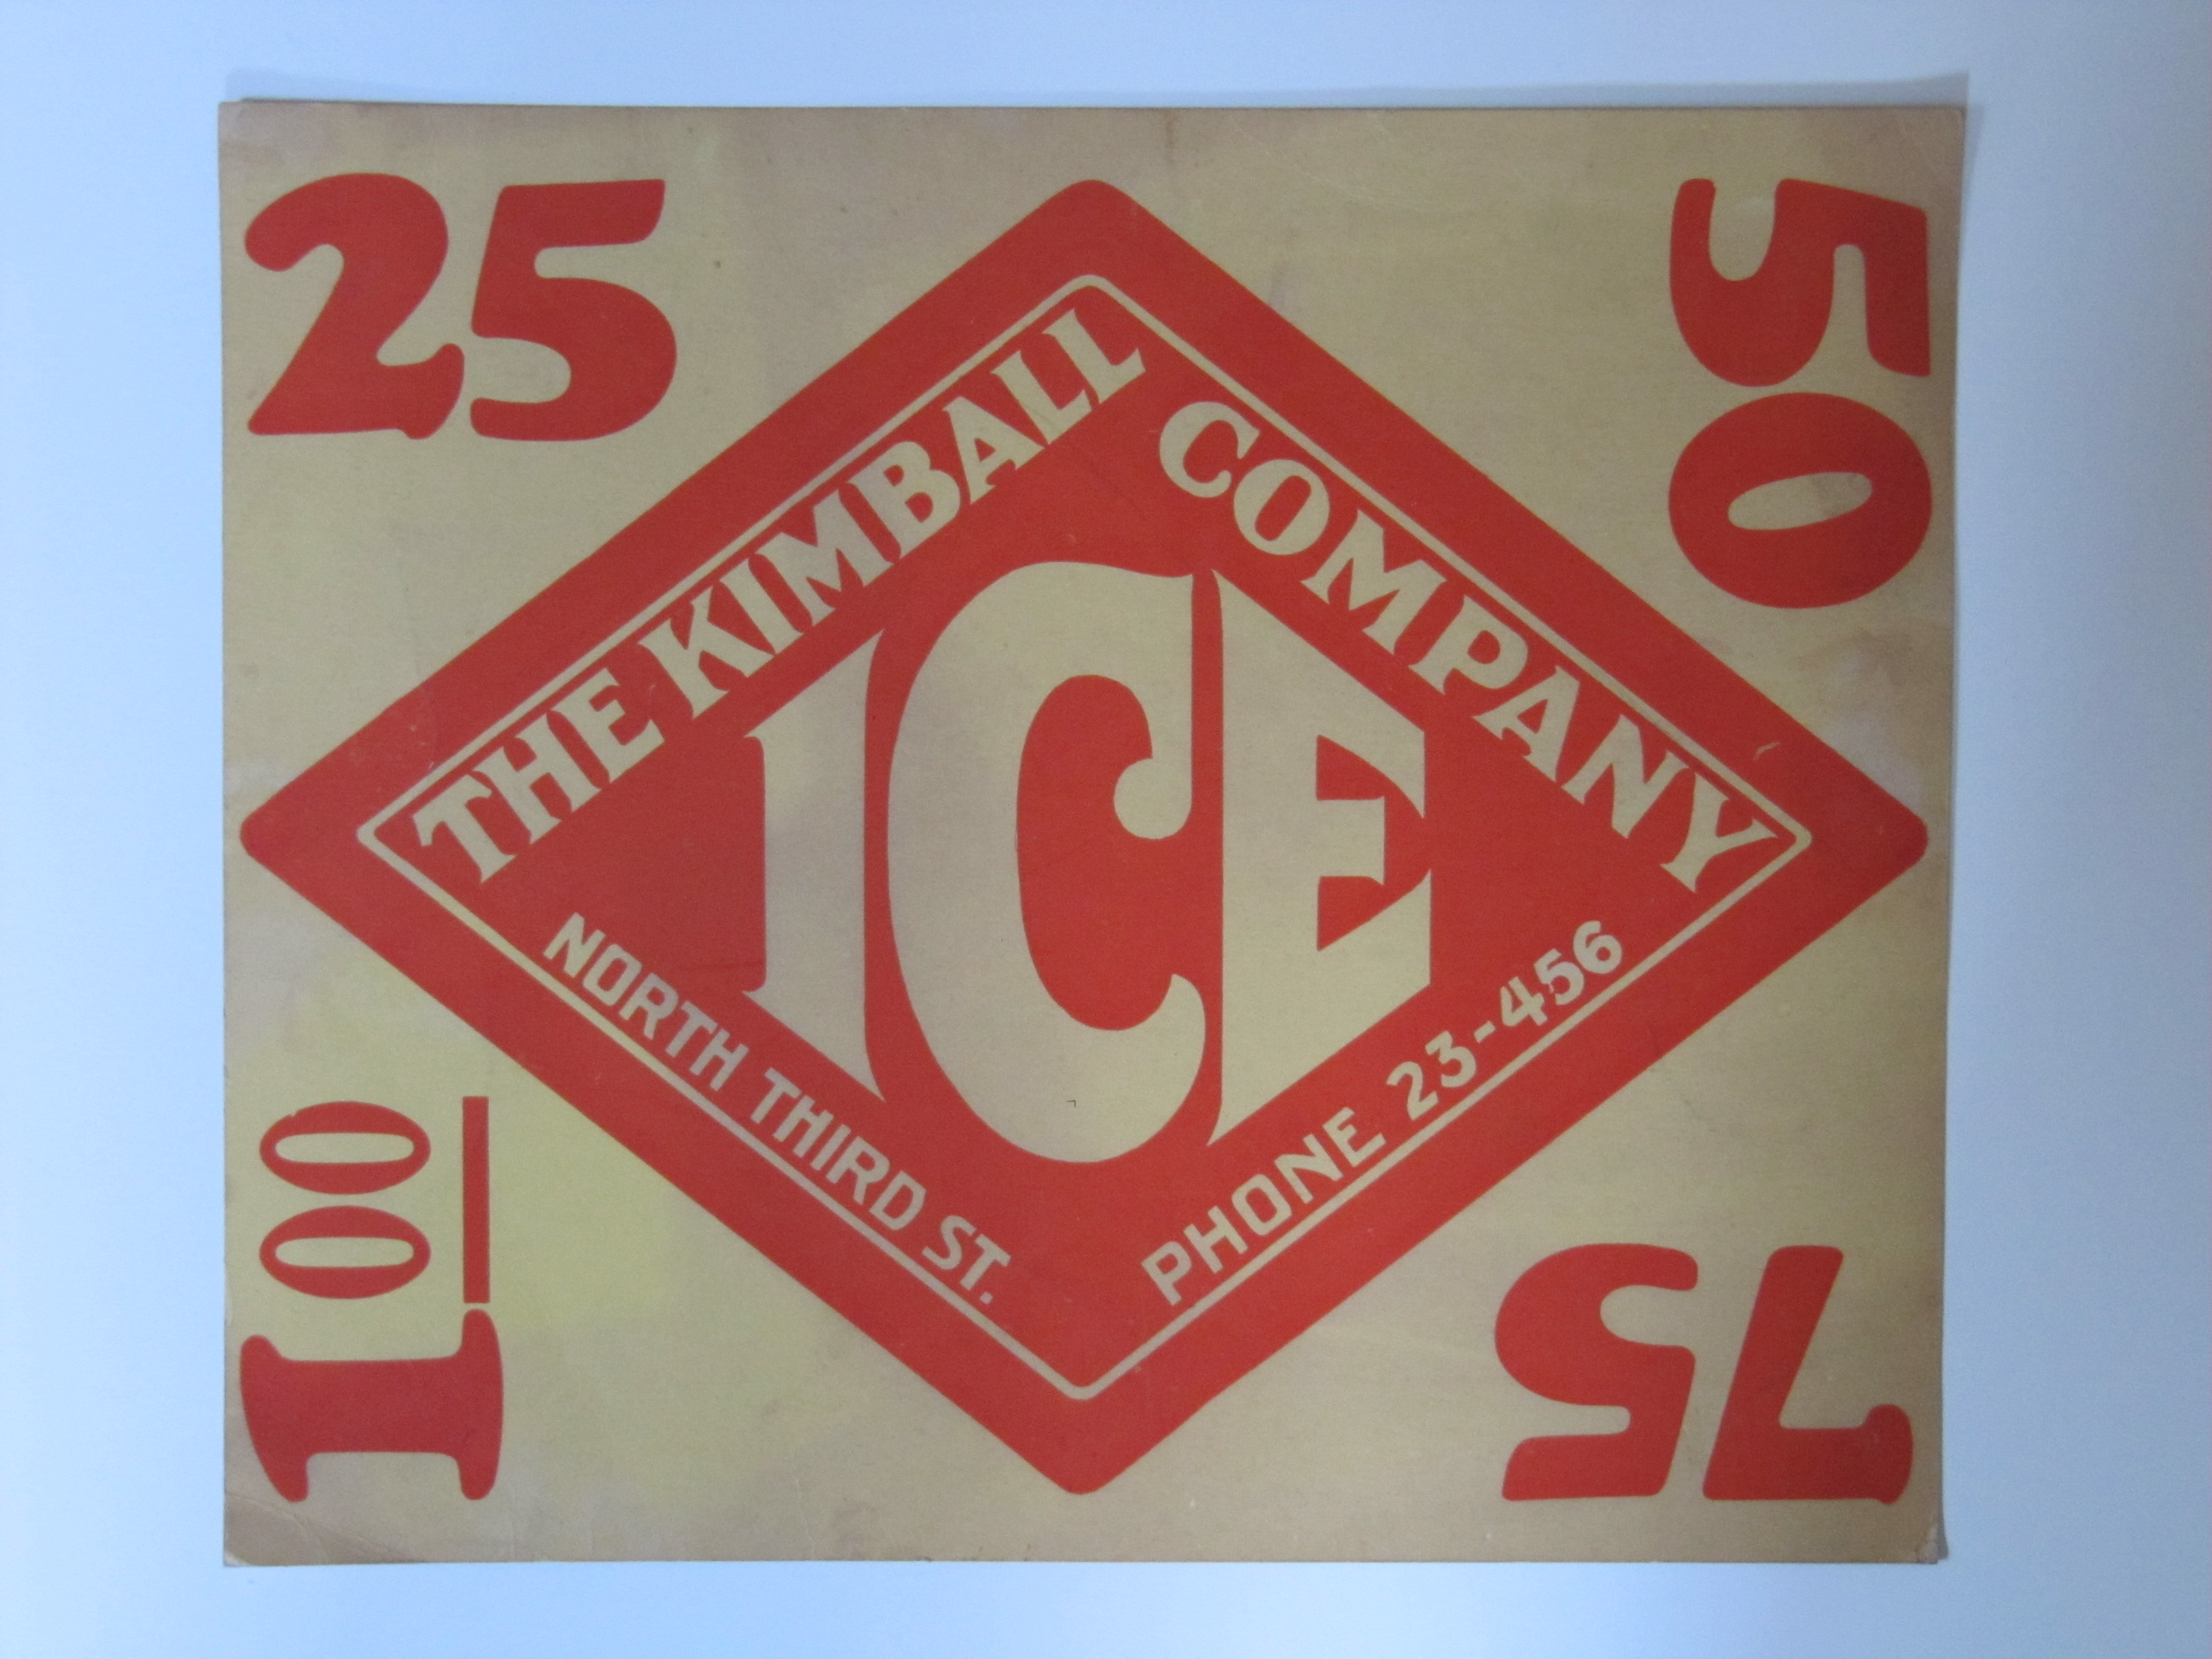 Kimball Ice Company